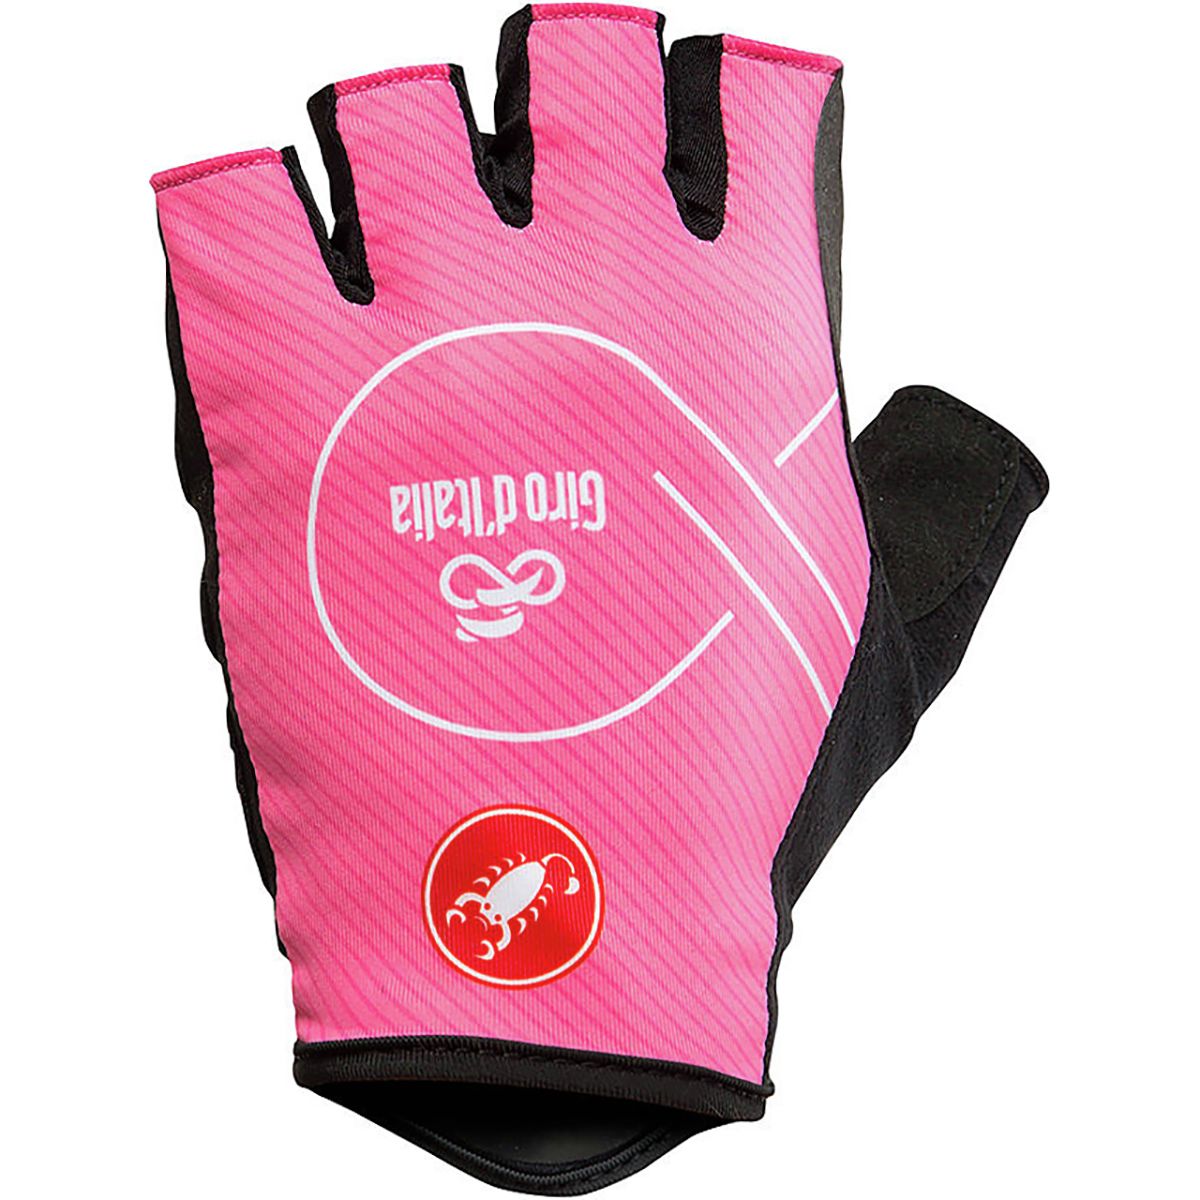 Castelli Giro D'italia Glove - Men's